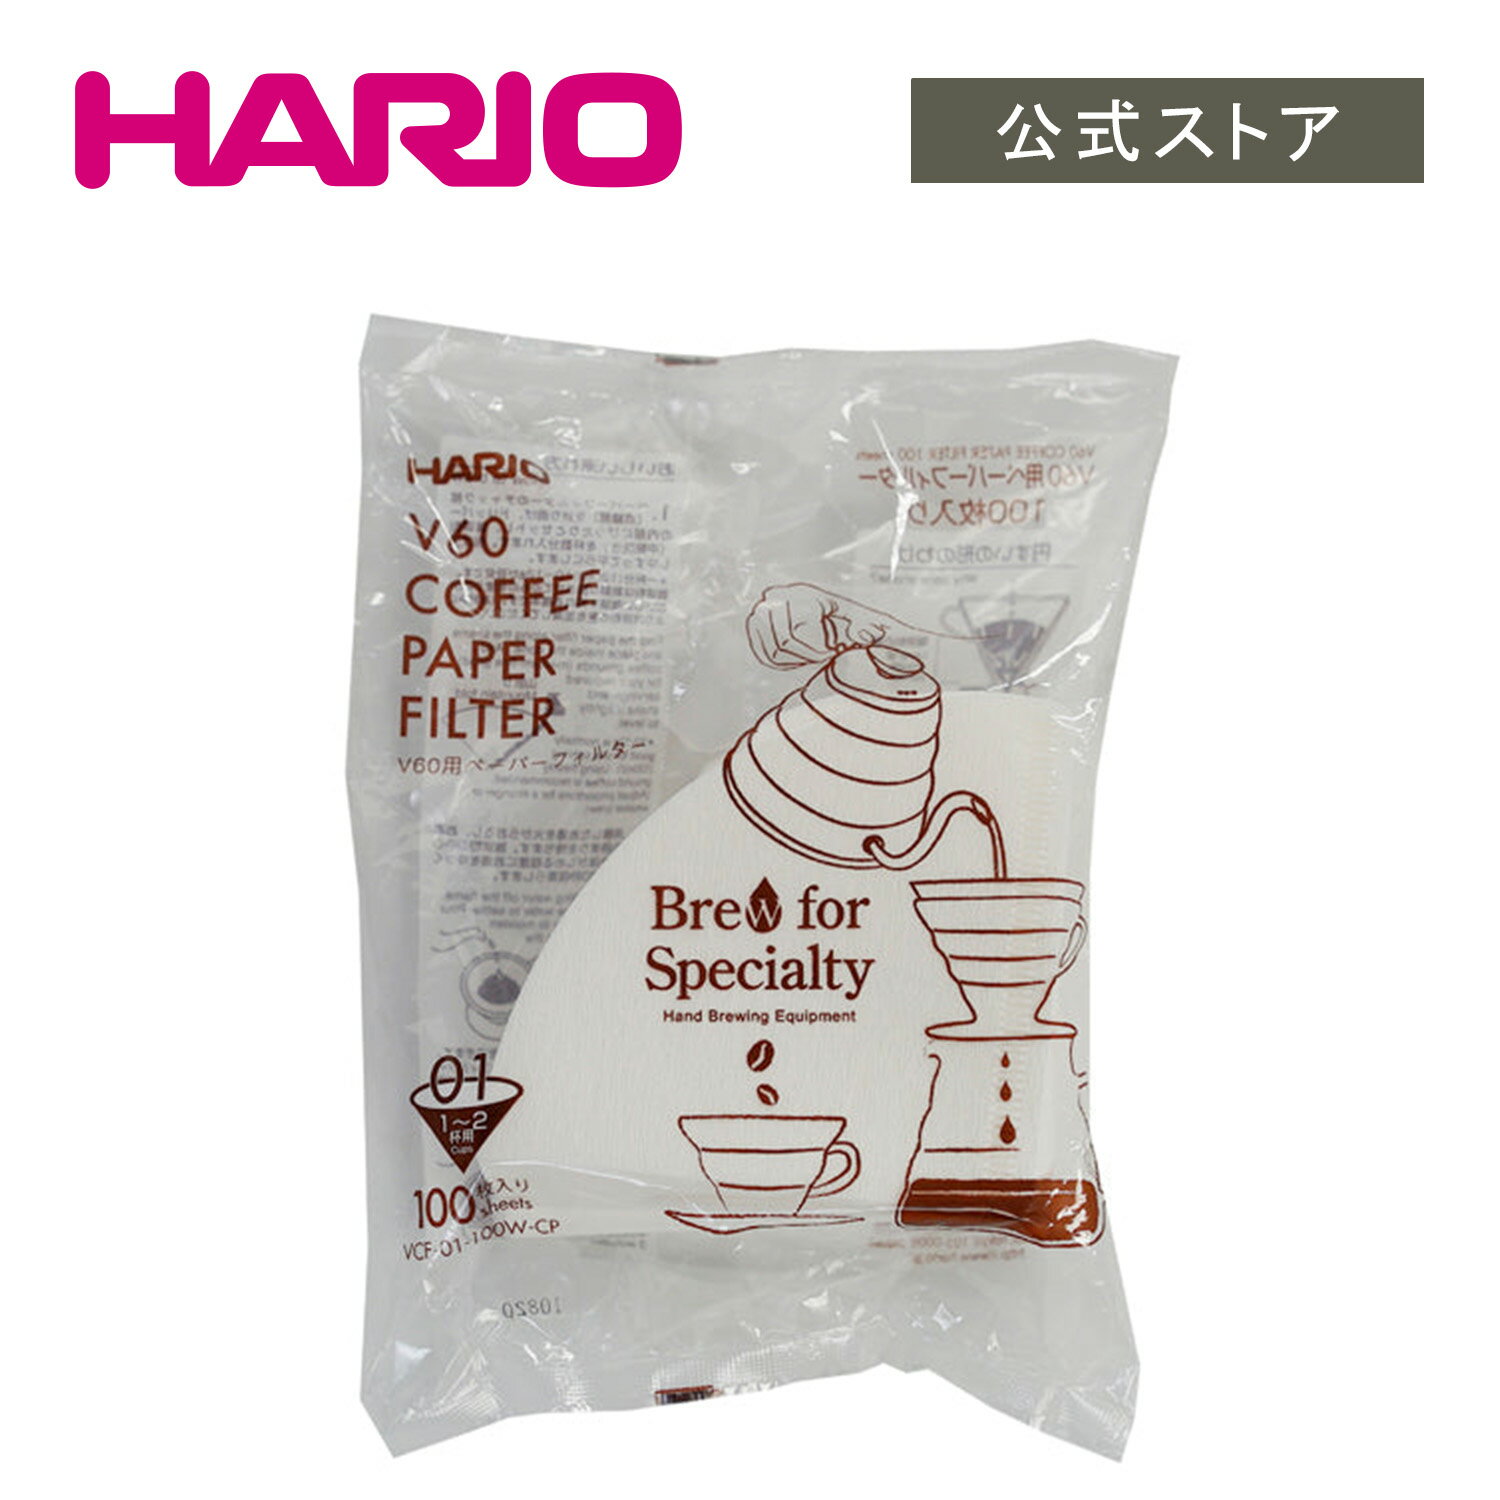 HARIO V60 用ペーパーフィルター01W　HARIO ハリオ 公式 ペーパーフィルター 円錐形 01サイズ ホワイト 100枚 コーヒーフィルター 1〜2杯用